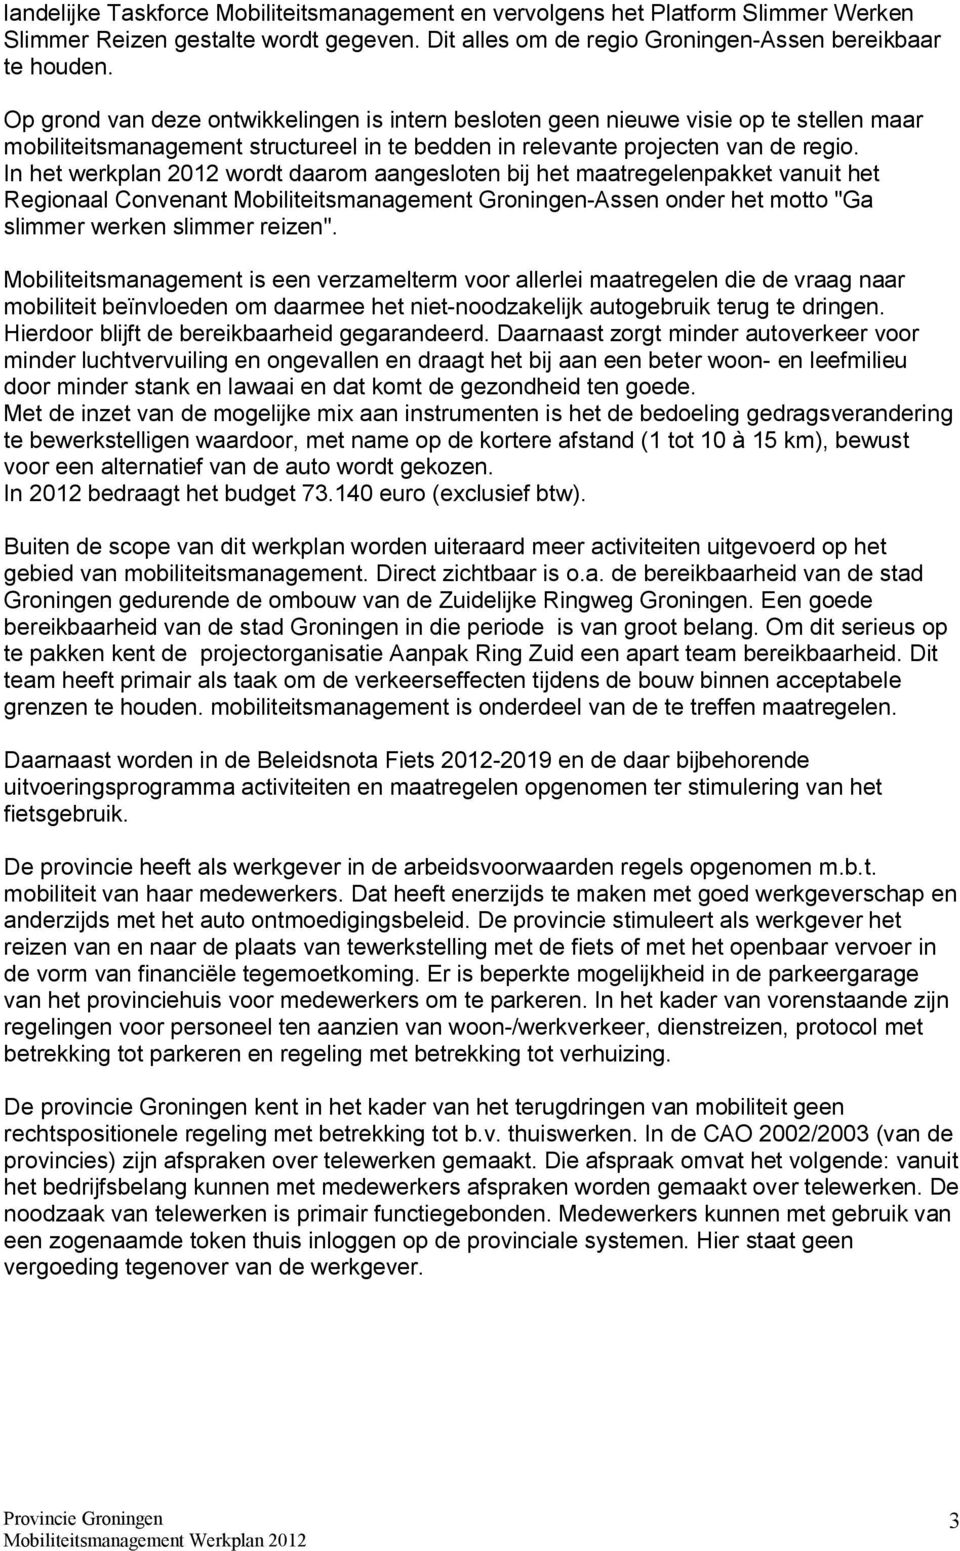 In het werkplan 2012 wordt daarom aangesloten bij het maatregelenpakket vanuit het Regionaal Convenant Mobiliteitsmanagement Groningen-Assen onder het motto "Ga slimmer werken slimmer reizen".